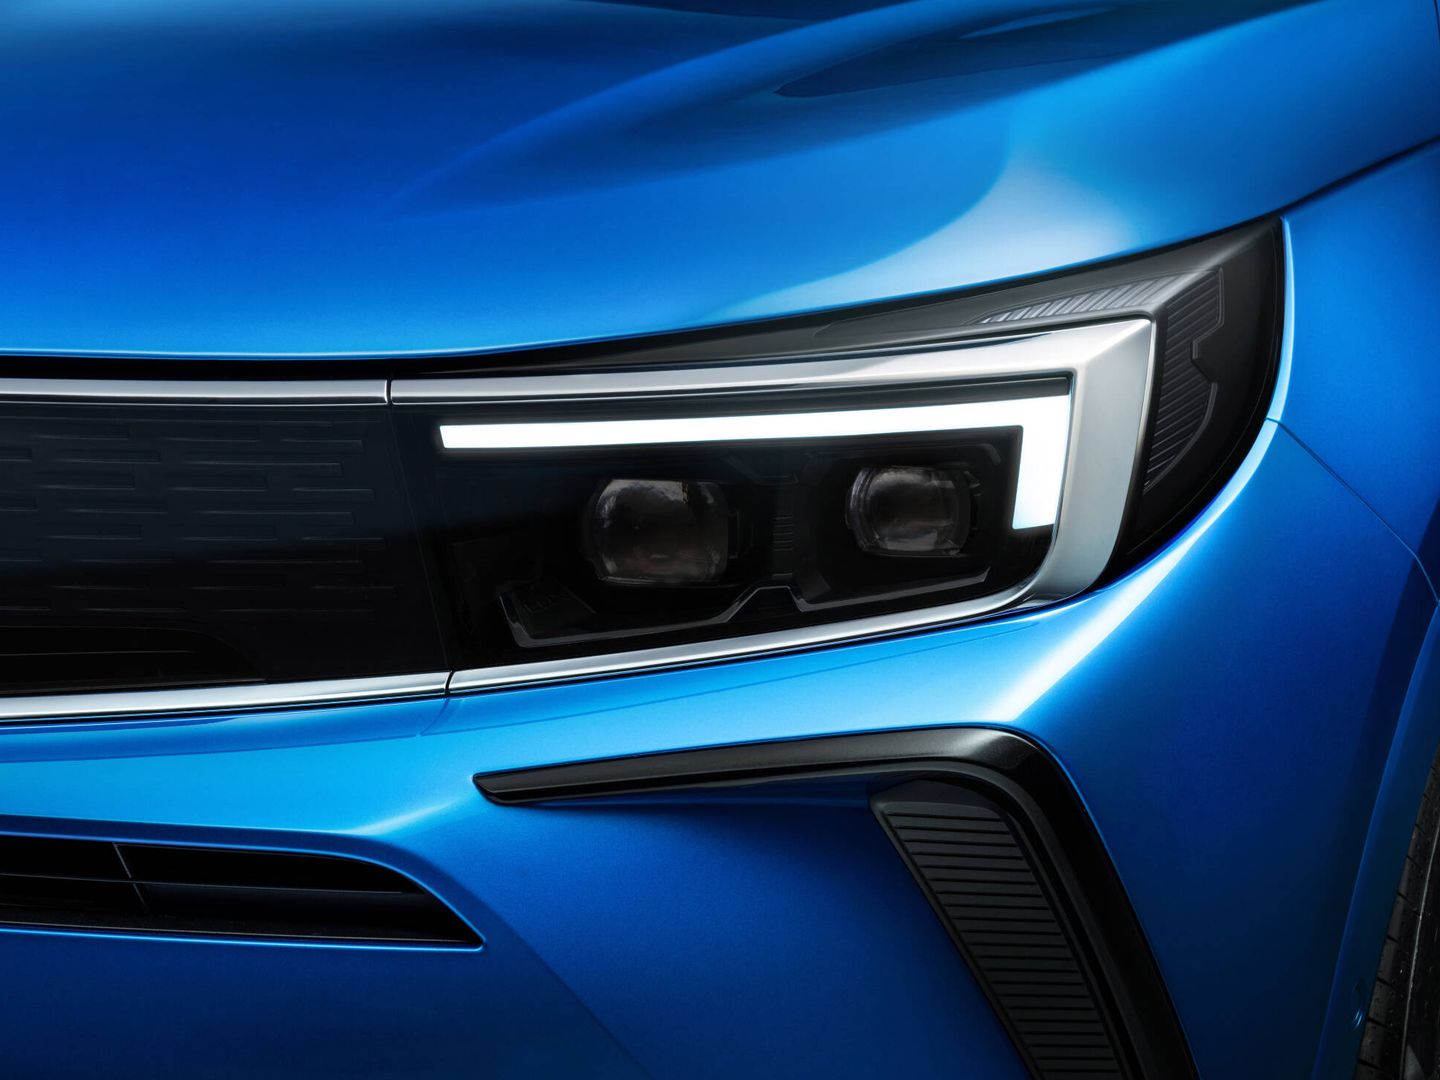 La nueva 'mirada' frontal es uno de los rasgos del diseño 'Opel Vizor'. Y cada faro delantero tiene 64 diodos LED.